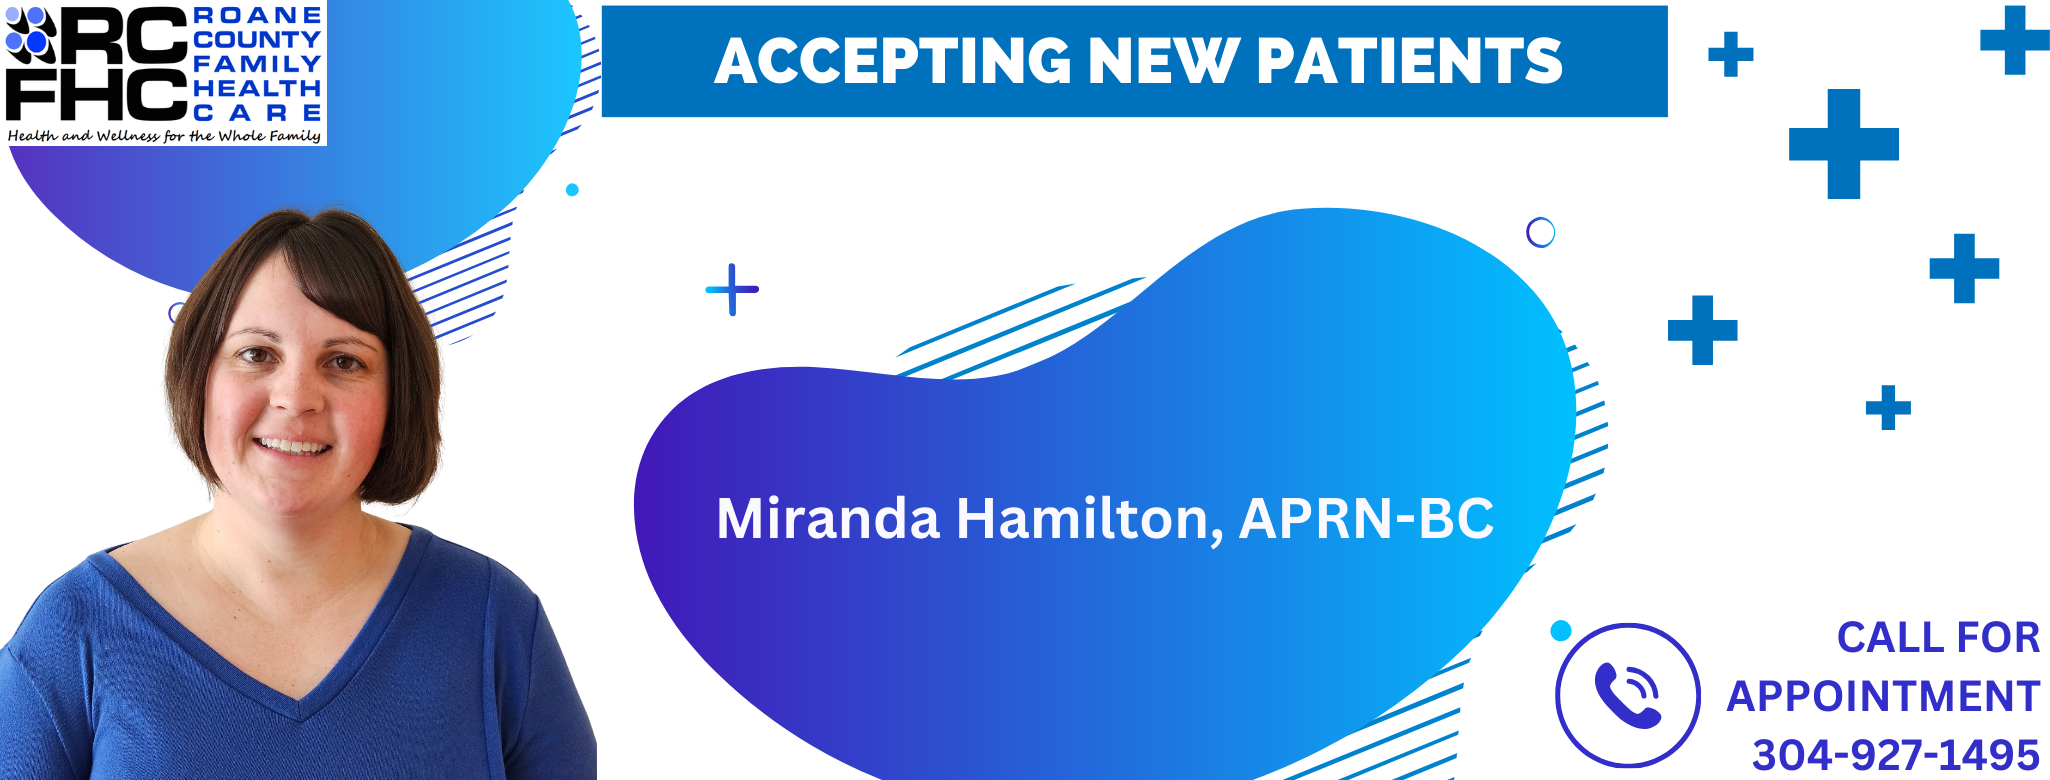 Miranda Hamilton accepting new patients